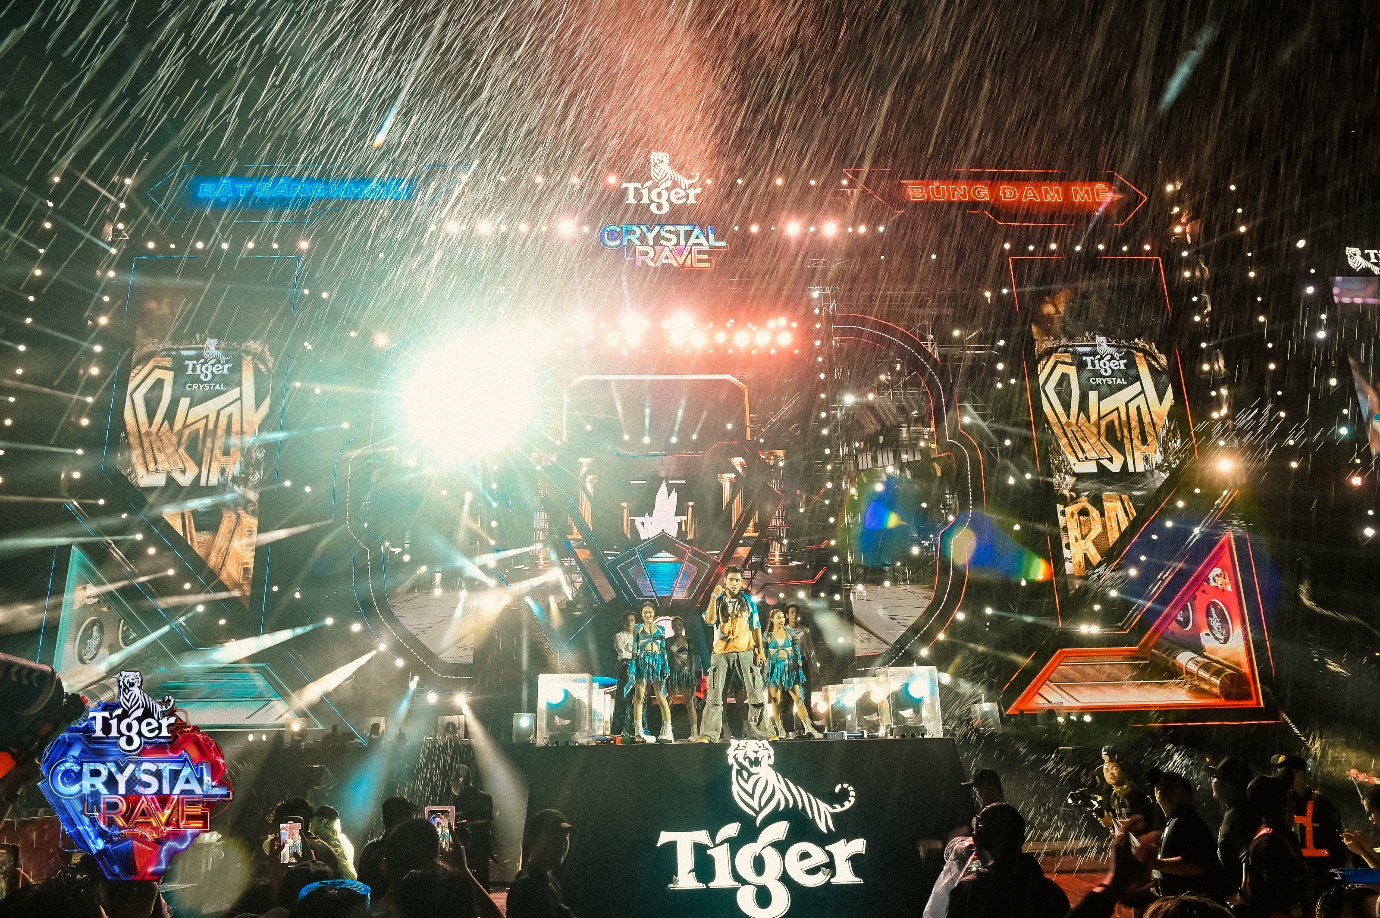 Water EDM Festival của năm gọi tên Tiger Crystal Rave 2.0, đại tiệc té nước cho 140.000 raver - Ảnh 3.